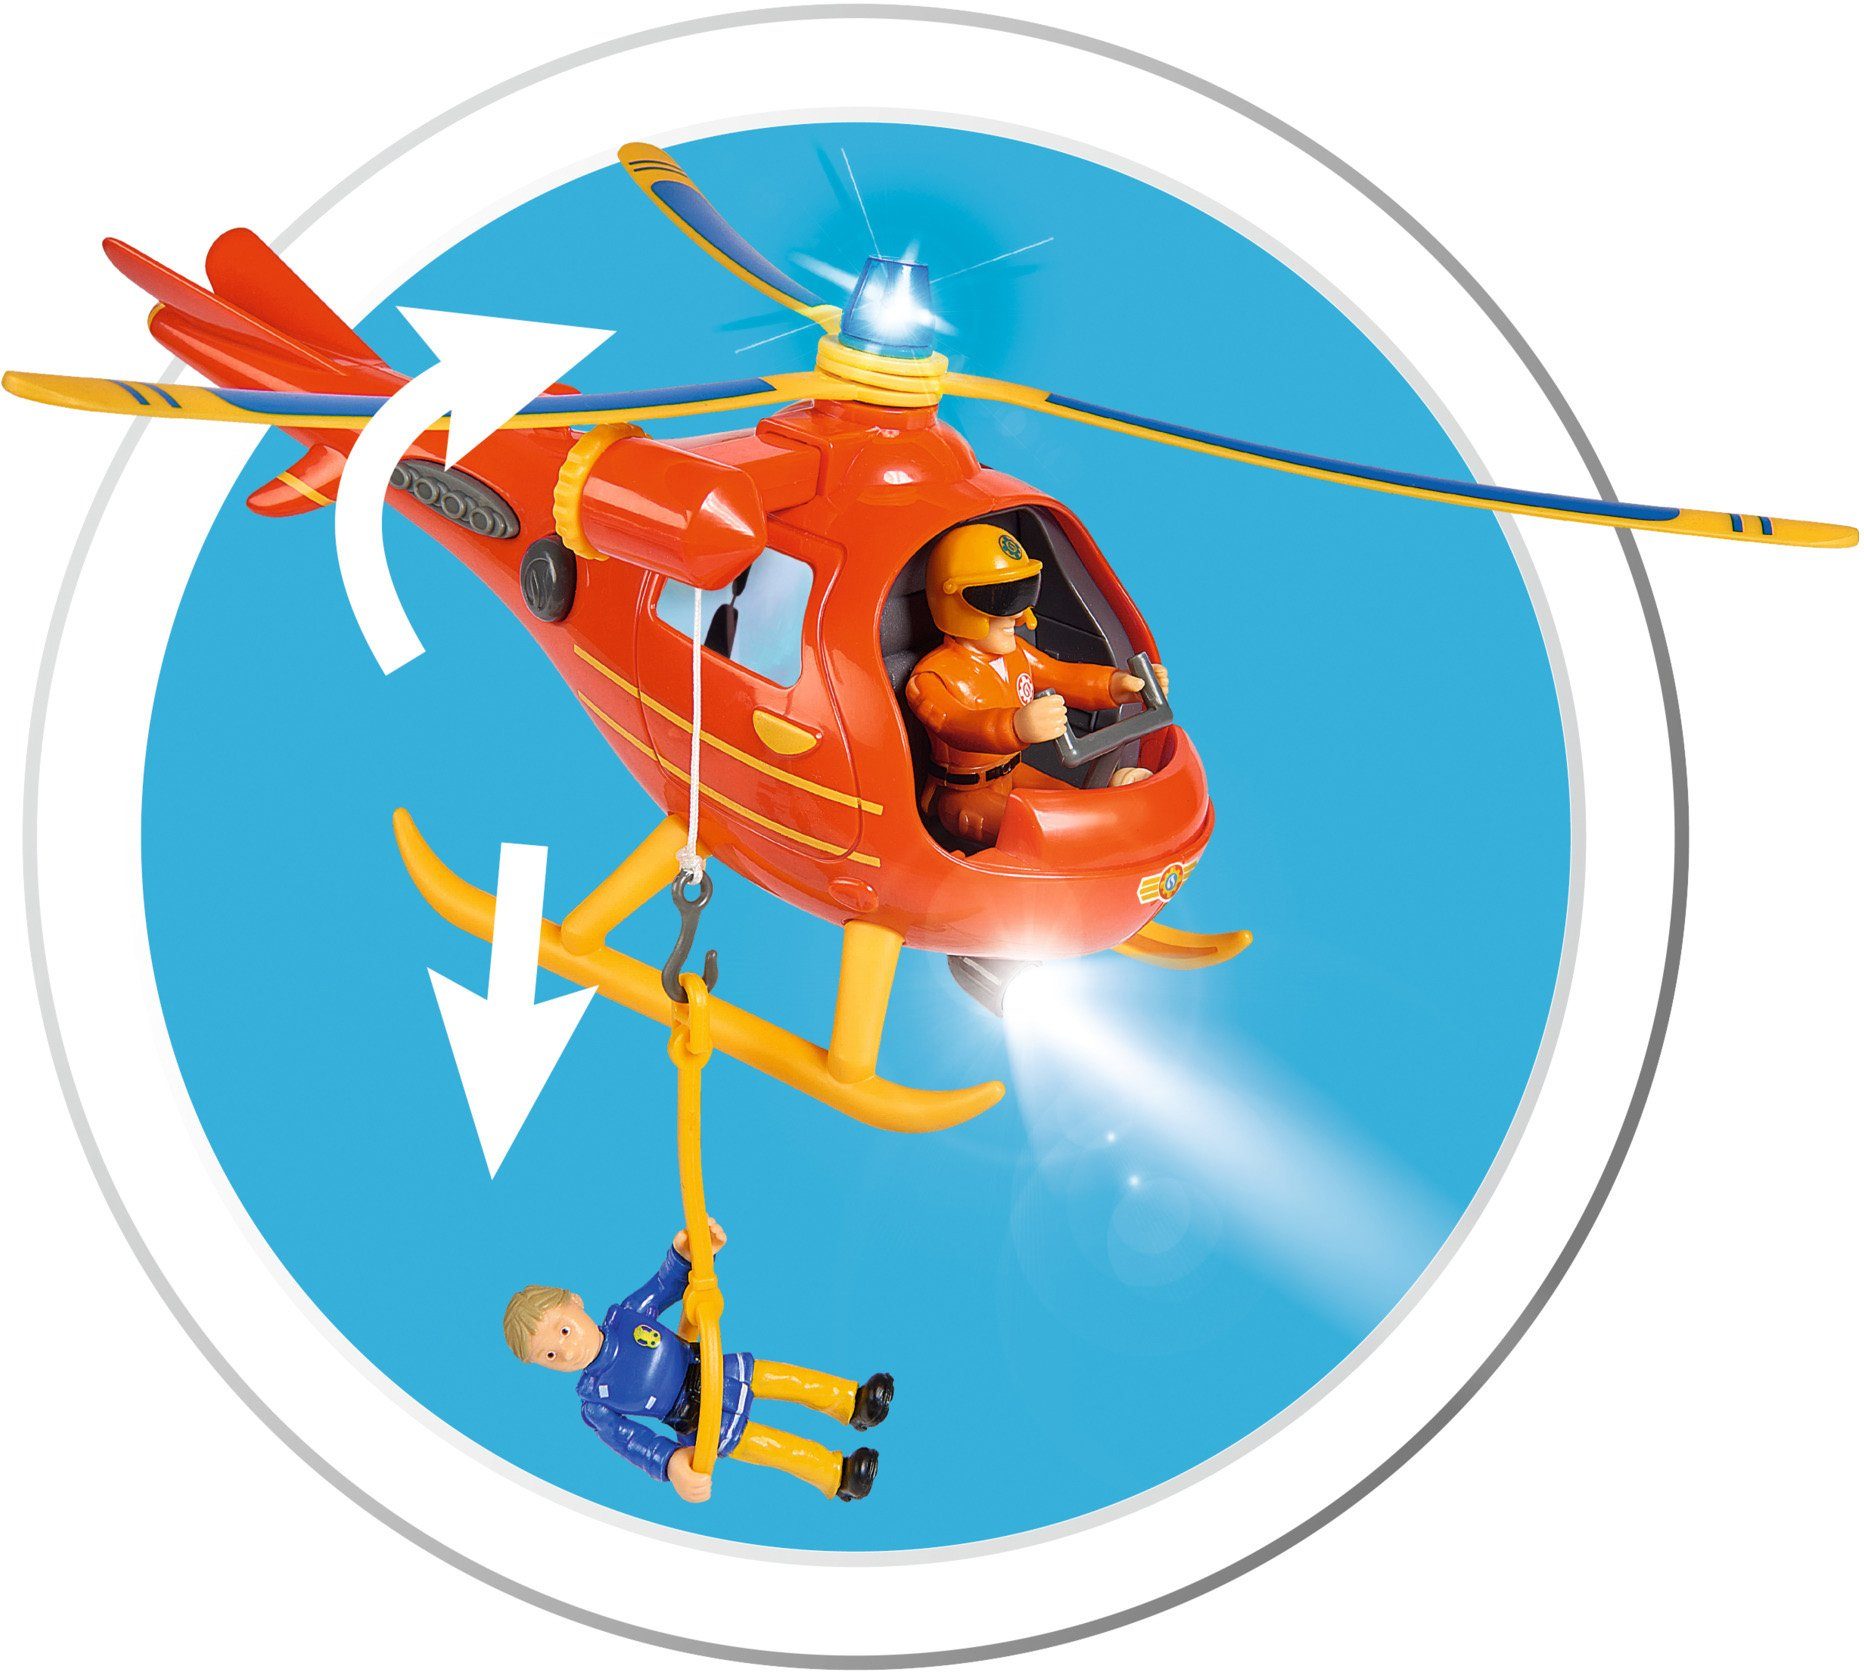 mit Lichteffekten Sam, Sound- und Spielzeug-Hubschrauber Feuerwehrmann Wallaby, SIMBA